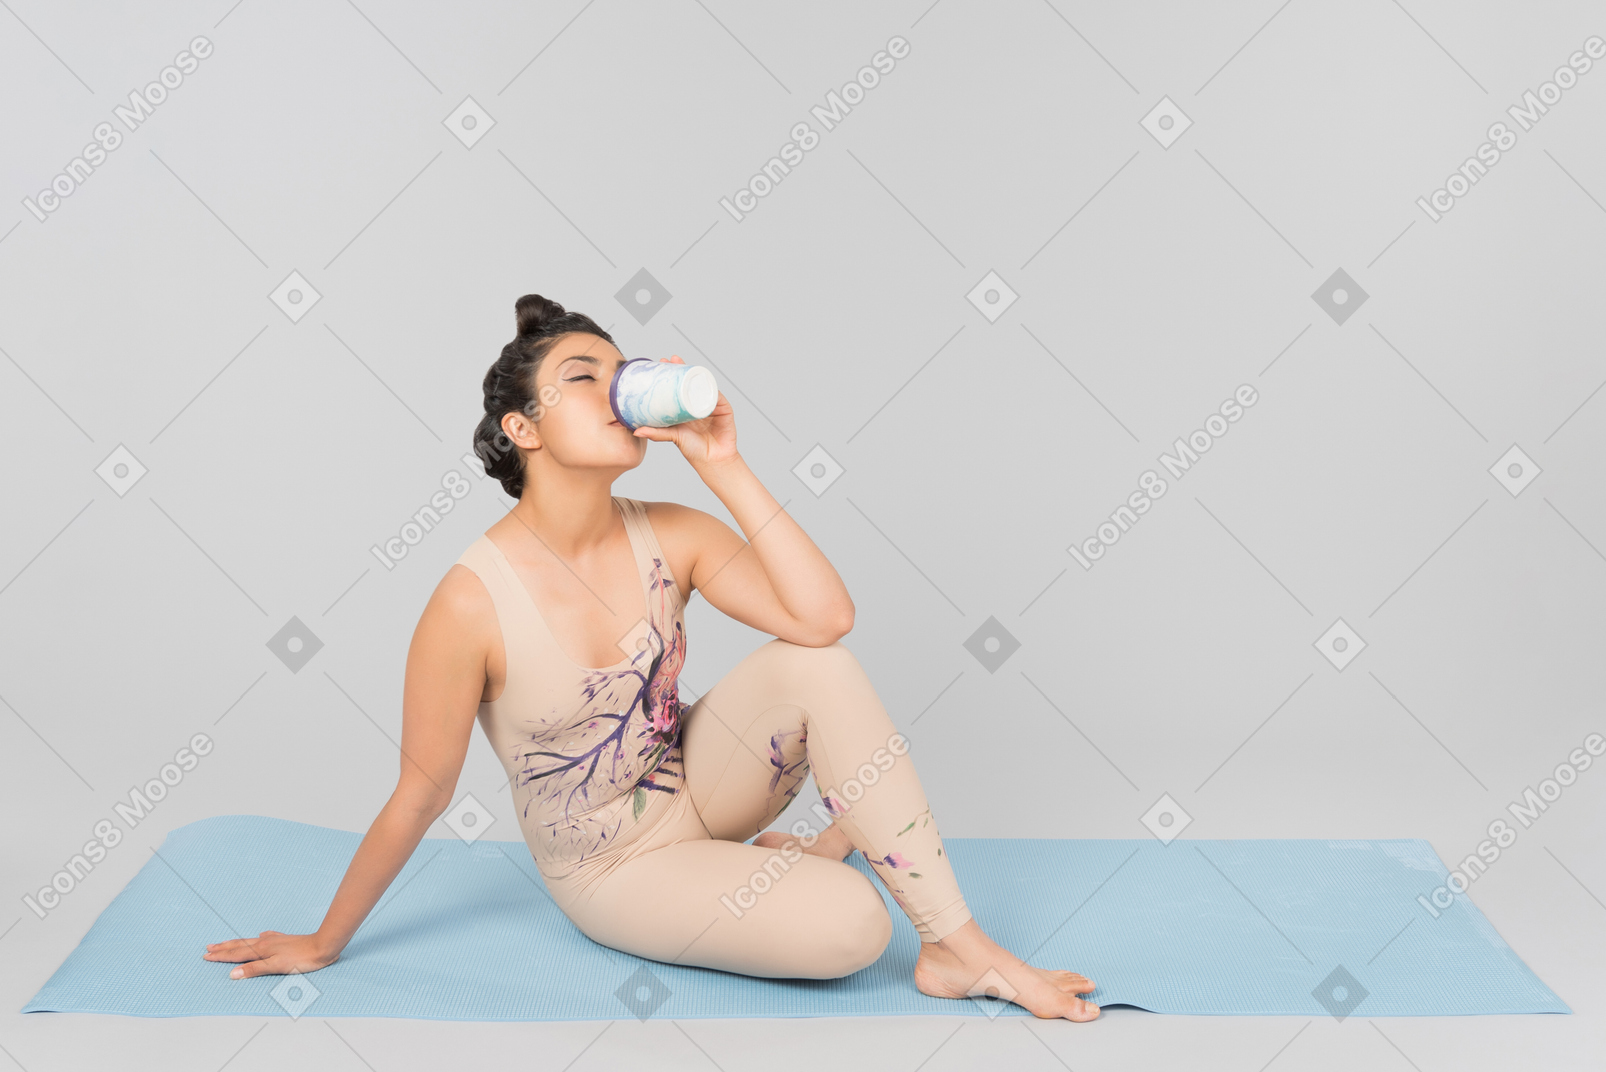 ヨガのマットの上に座って、コーヒーを飲みながら若いインドの体操選手